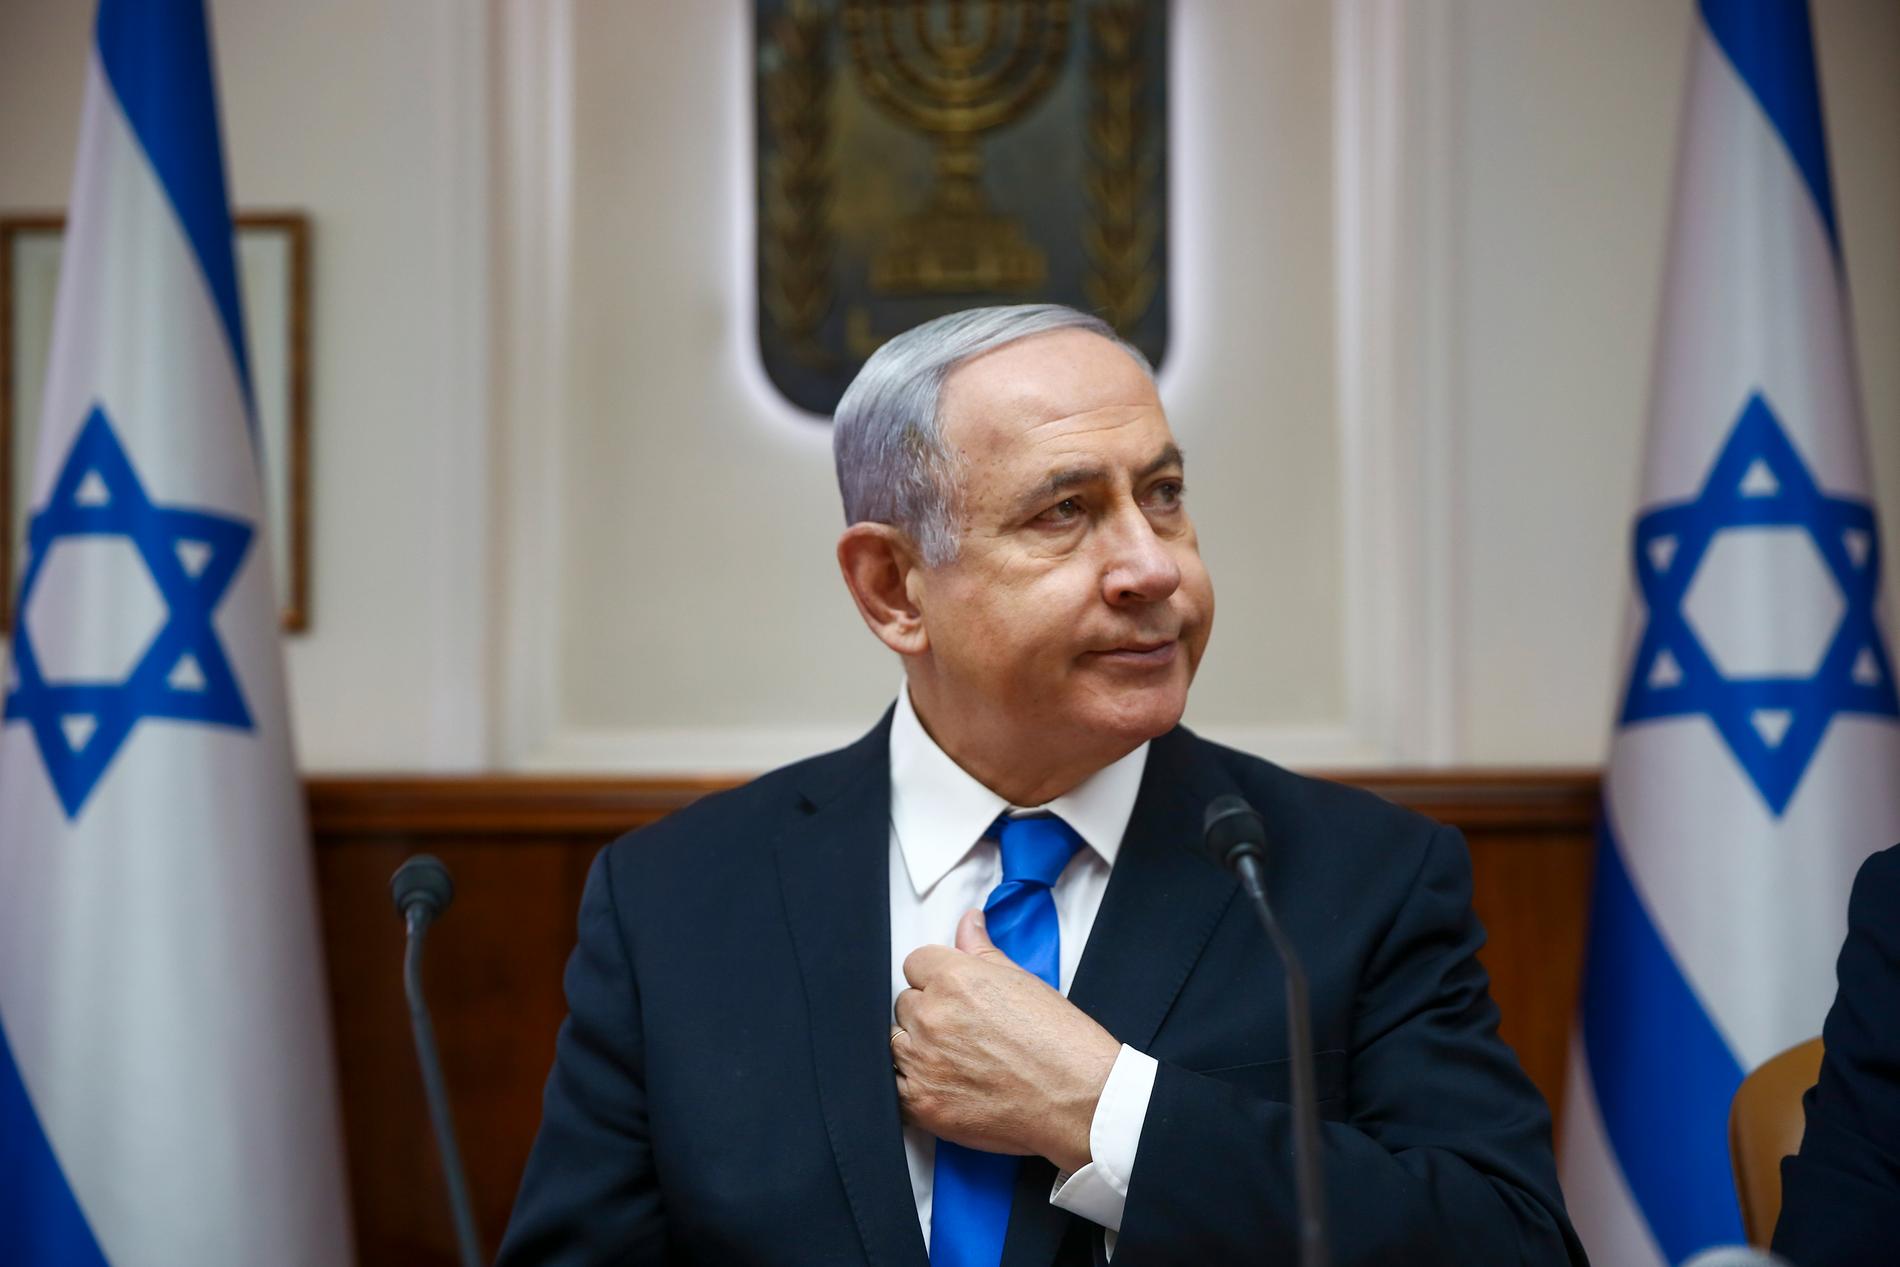 Framtiden är osäker för Israels premiärminister Benjamin Netanyahu, när landet går till nyval samtidigt som Netanyahu själv har ett hot om korruptionsåtal hängande över sig. Bild från juni 2019.